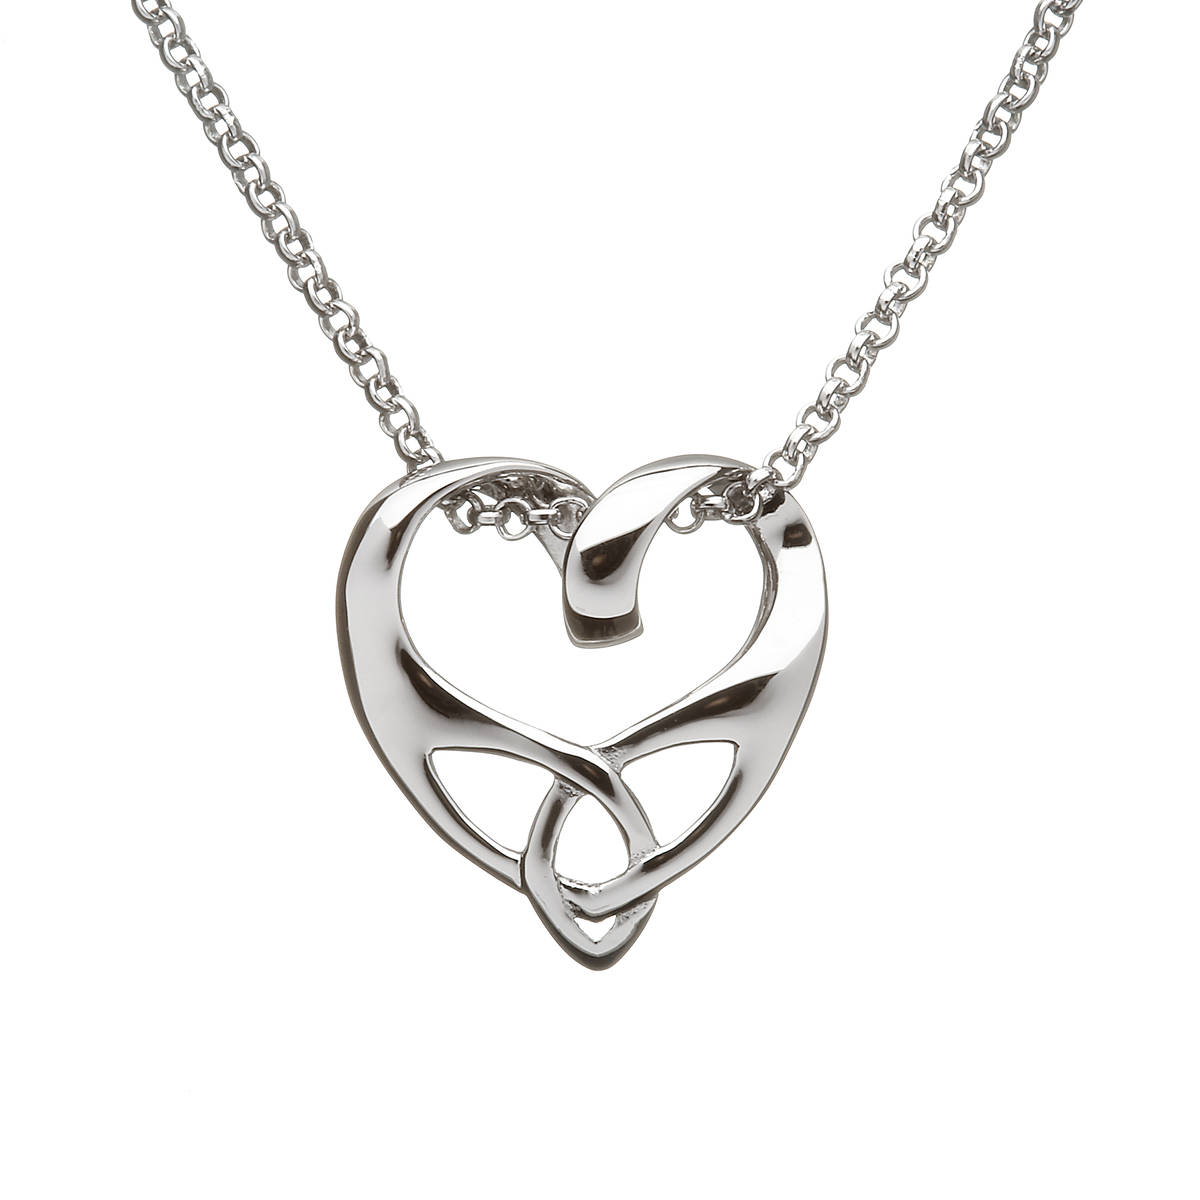 Silver Trinity Knot Heart Pendant